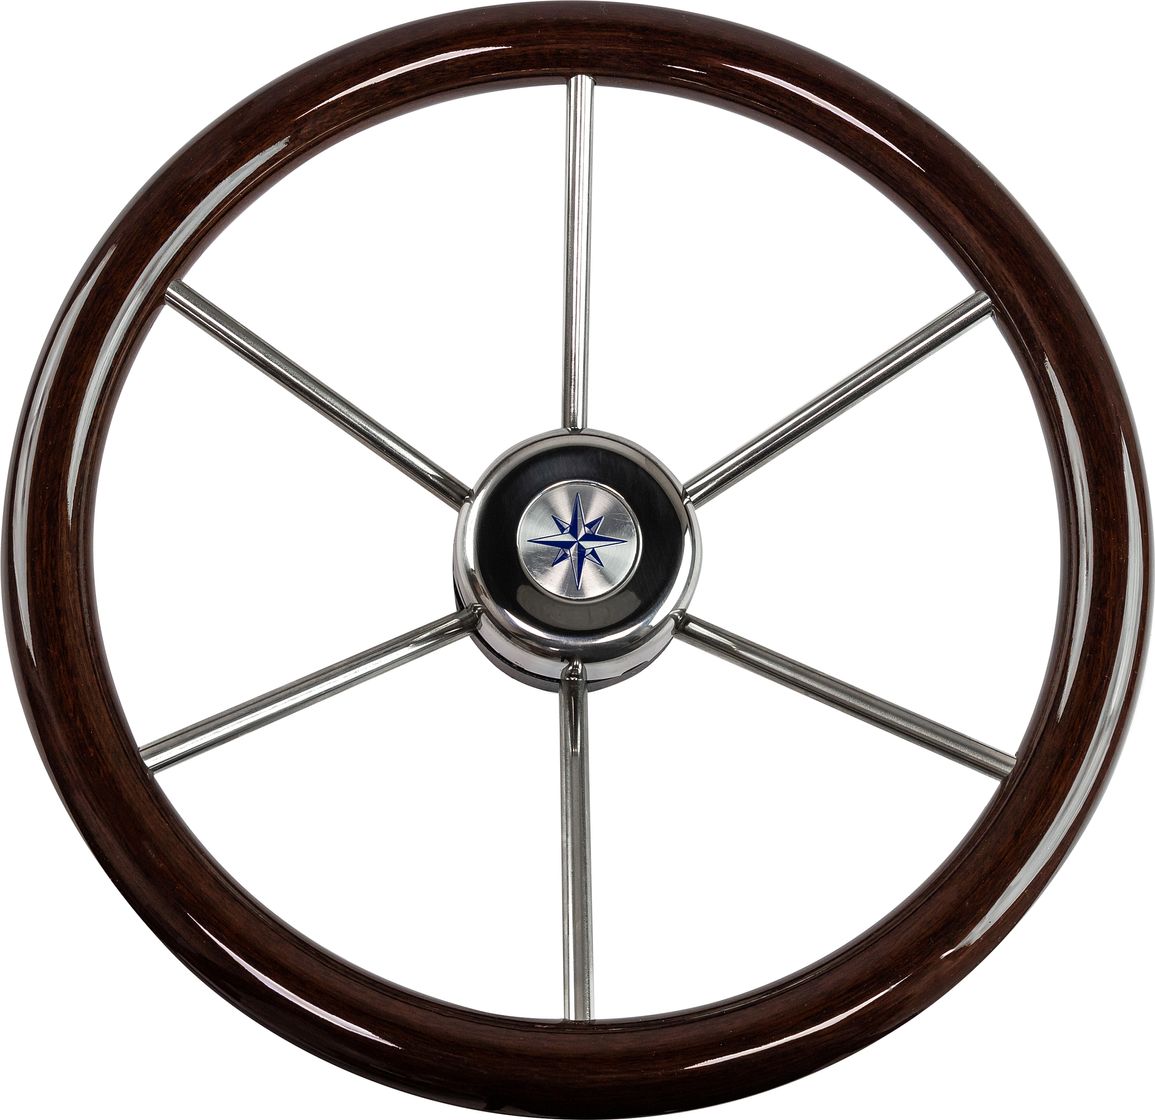 Рулевое колесо LEADER WOOD деревянный обод серебряные спицы д. 390 мм VN7390-33 рулевое колесо leader plast обод серебряные спицы д 360 мм vn8360 01